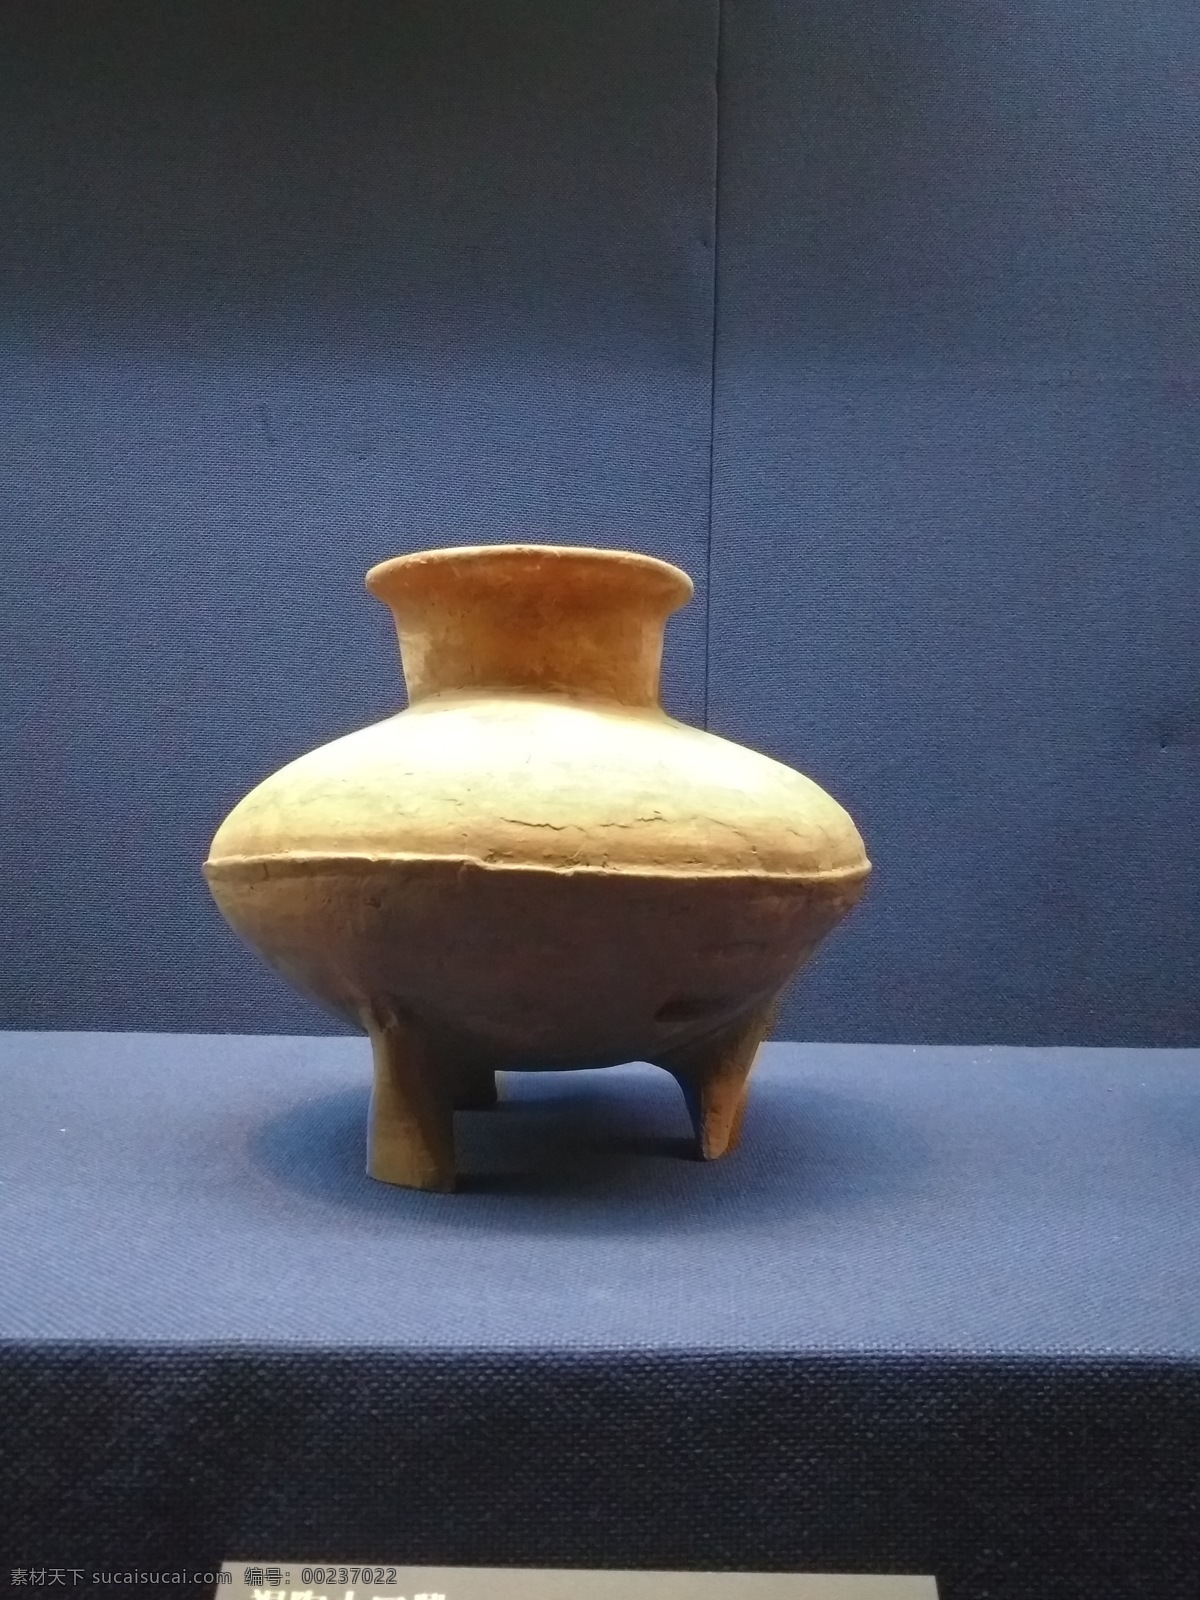 陶瓷 陶土文化 新石器时代陶 中国陶瓷艺术 博物馆馆藏 艺术陶瓷 文化艺术 传统文化